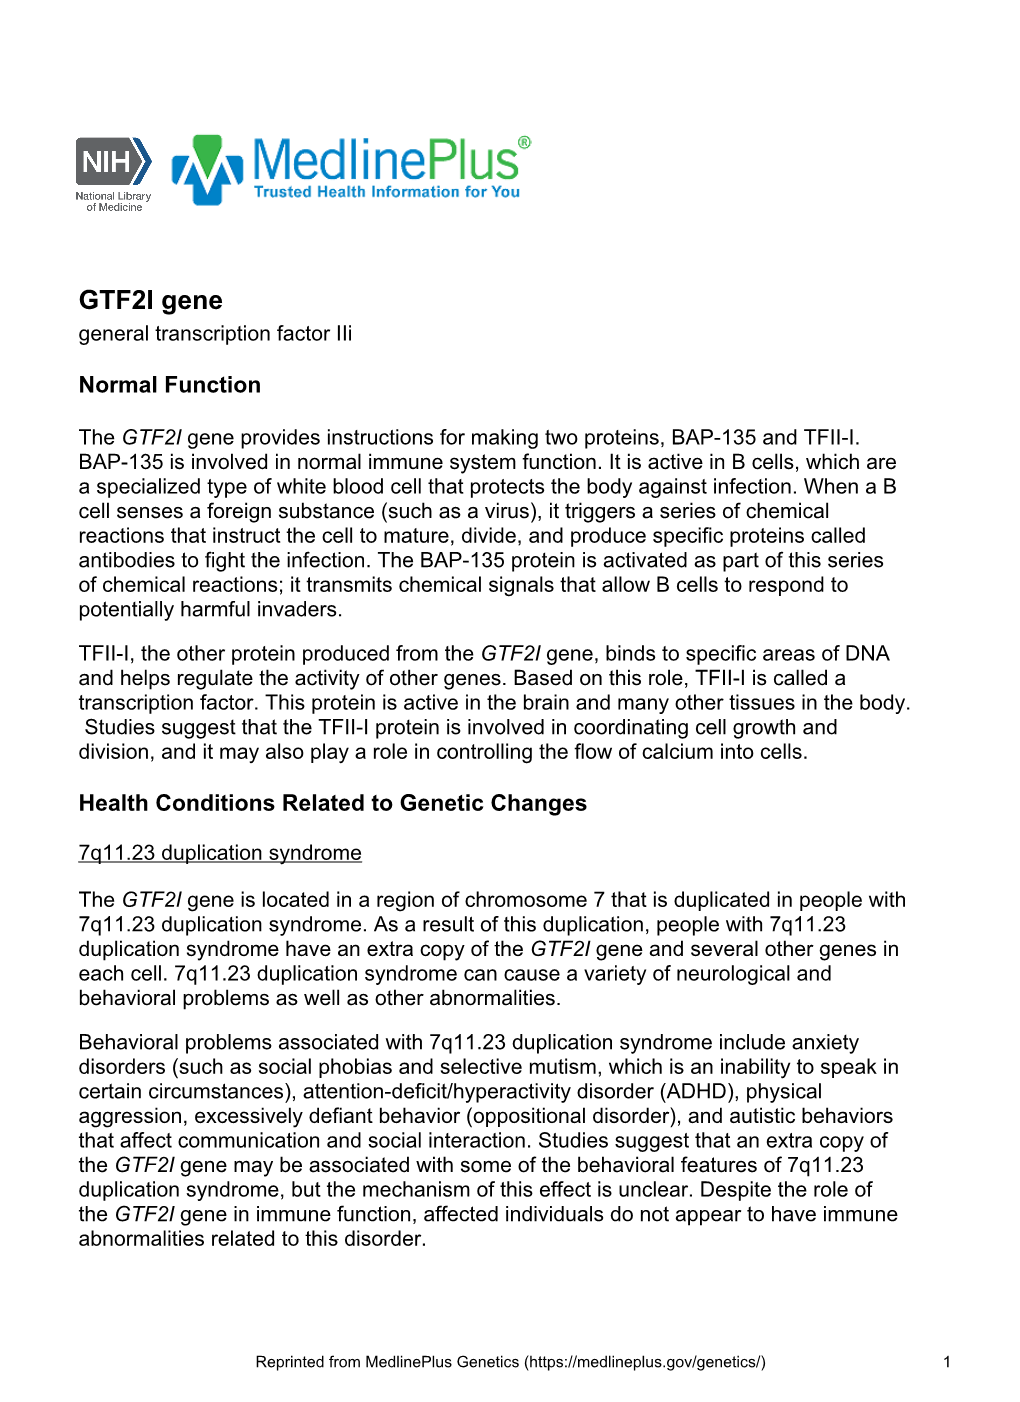 GTF2I Gene General Transcription Factor Iii